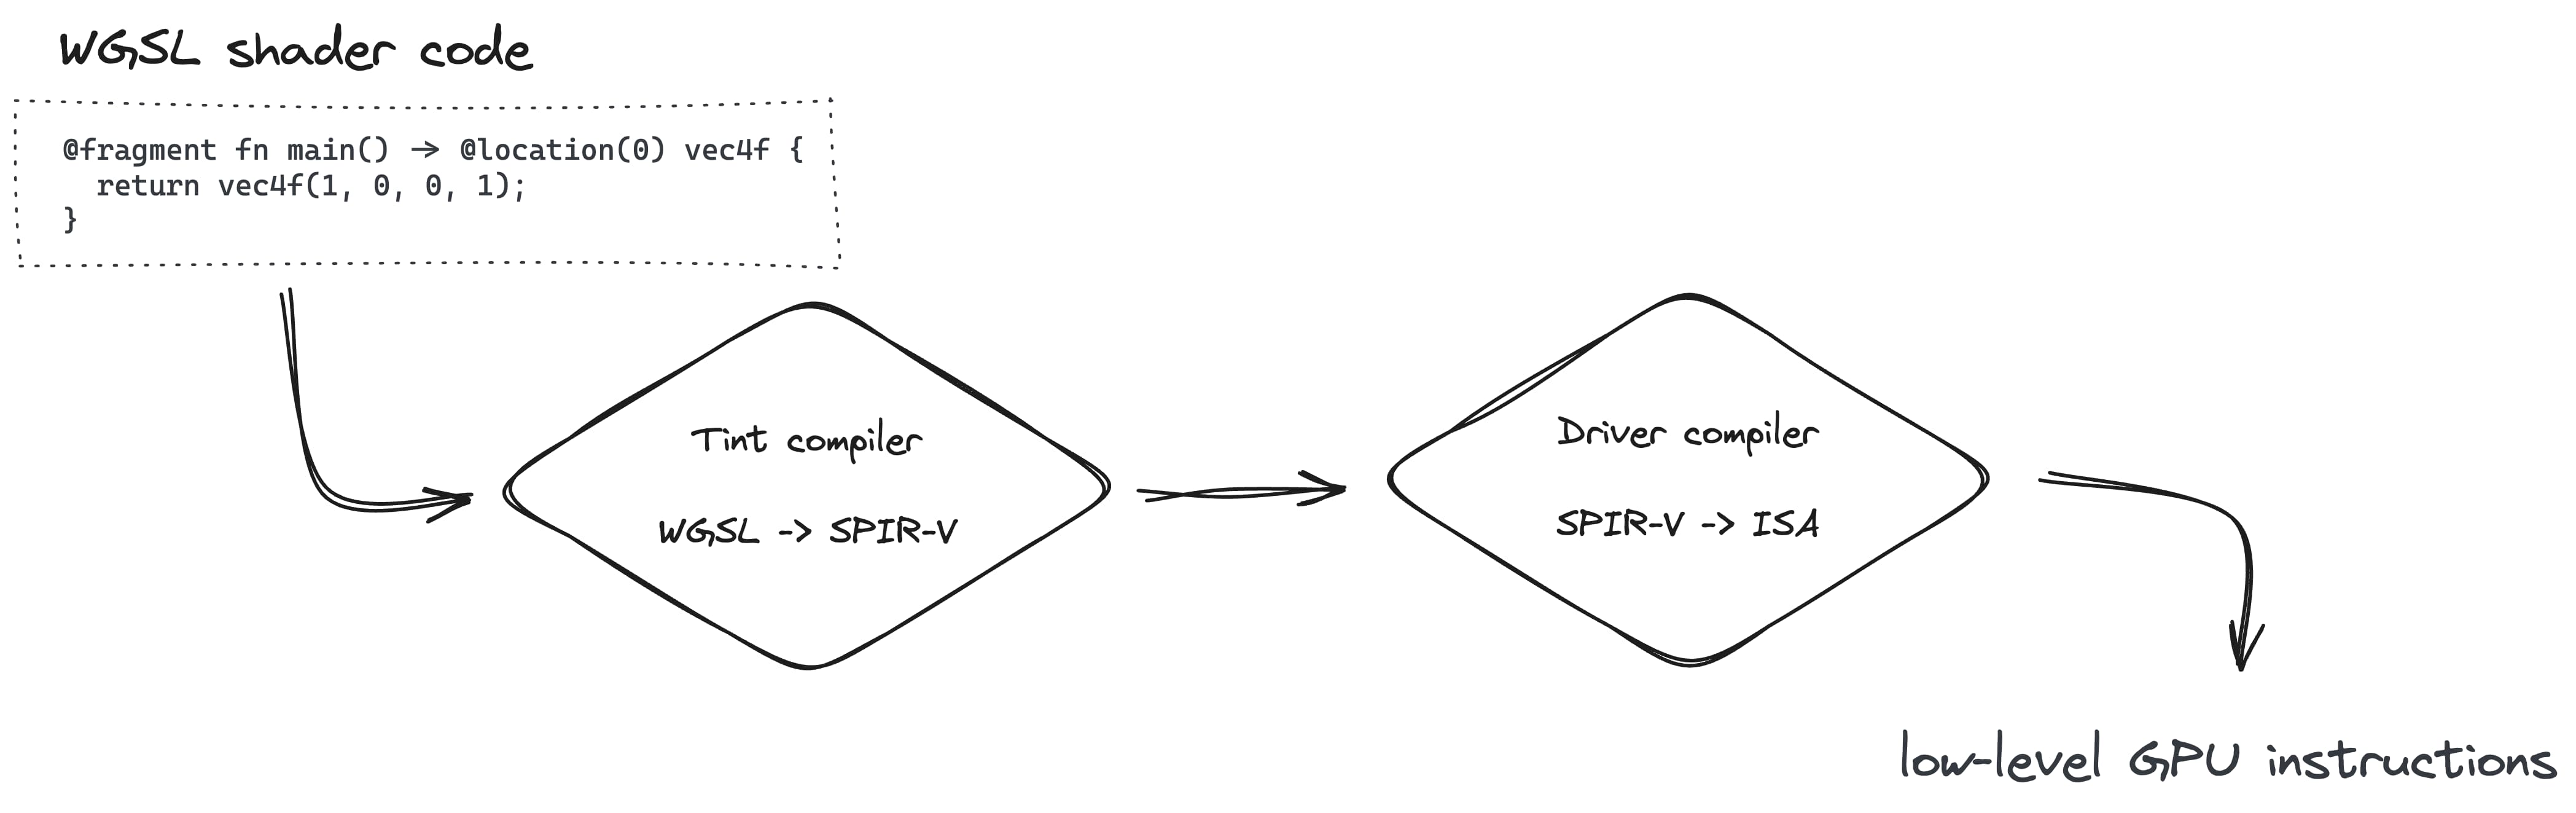 La creación de canalizaciones de renderización implica la conversión de WGSL a SPIR-V con el compilador de tonos y, luego, a ISA con el compilador de controladores.